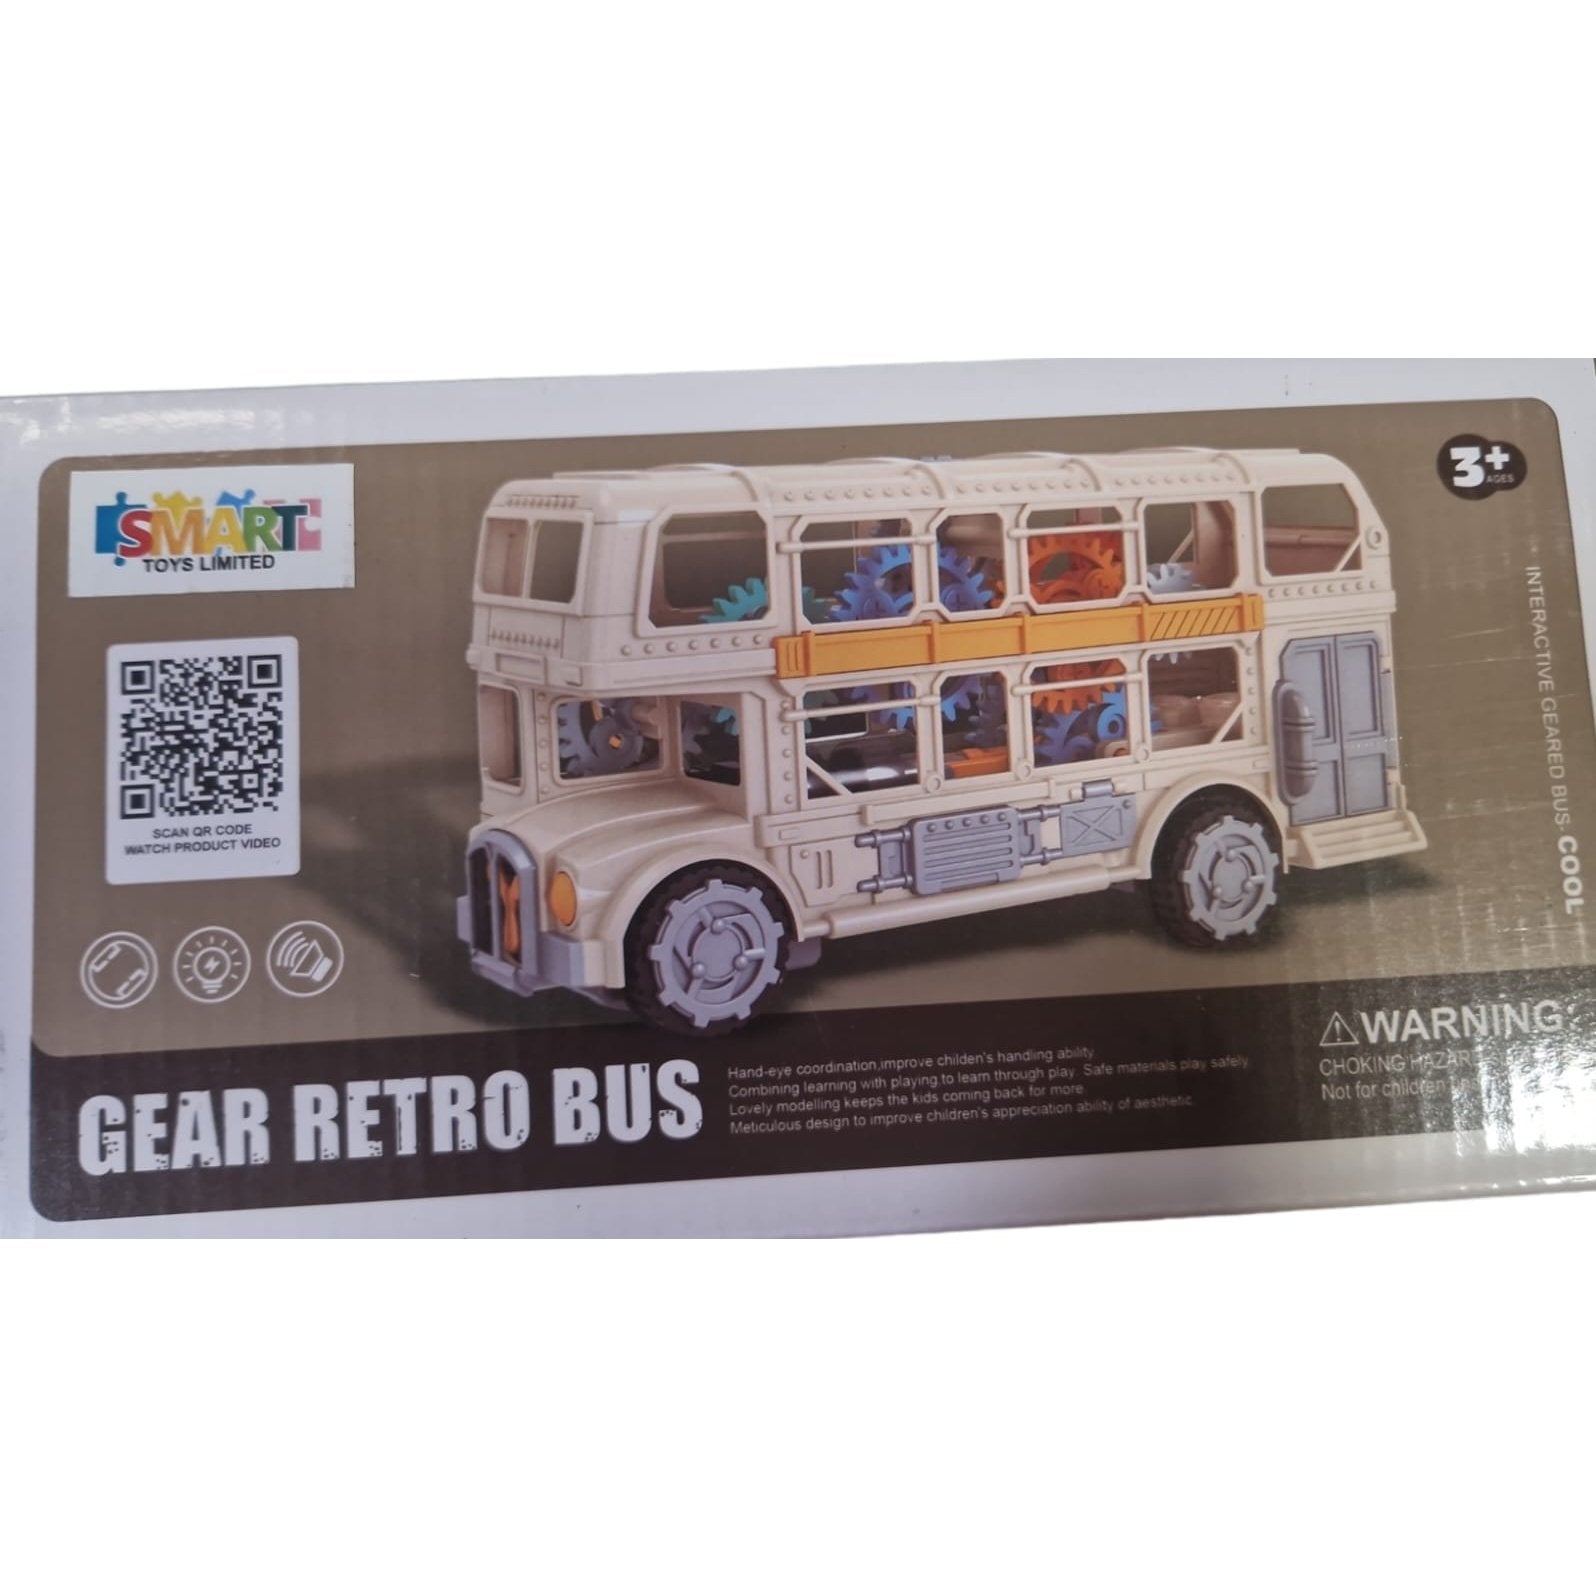 Gear Retro Bus - kidzbuzzz